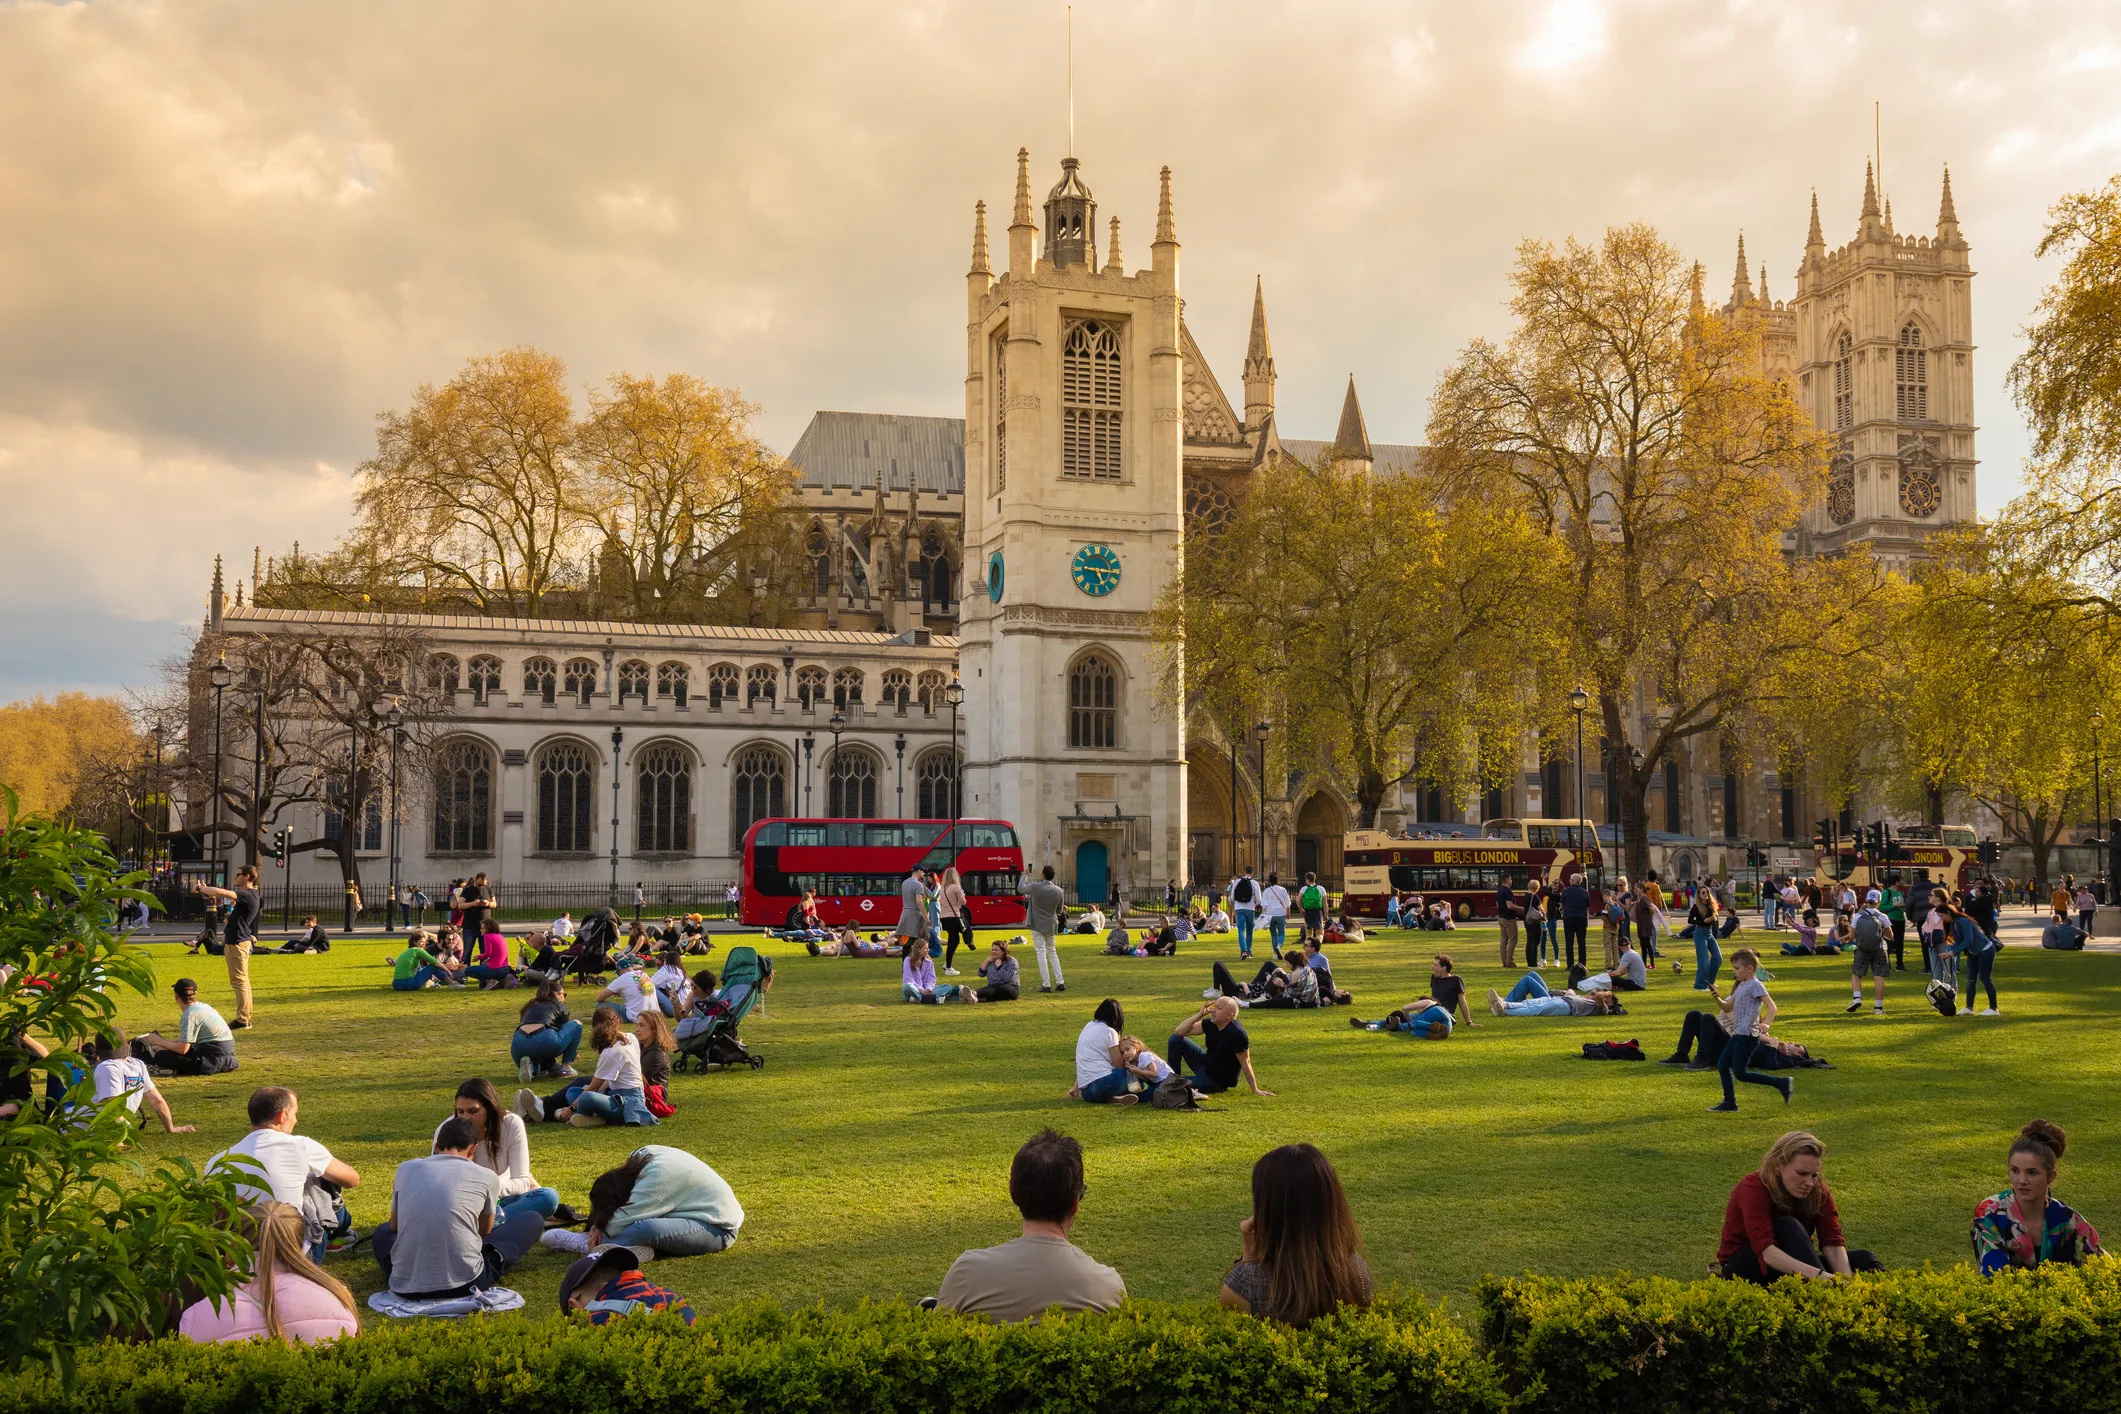 Londres, une ville à vivre: détente au Parliament Square Garden.  ©  iStock / Janis Abolins